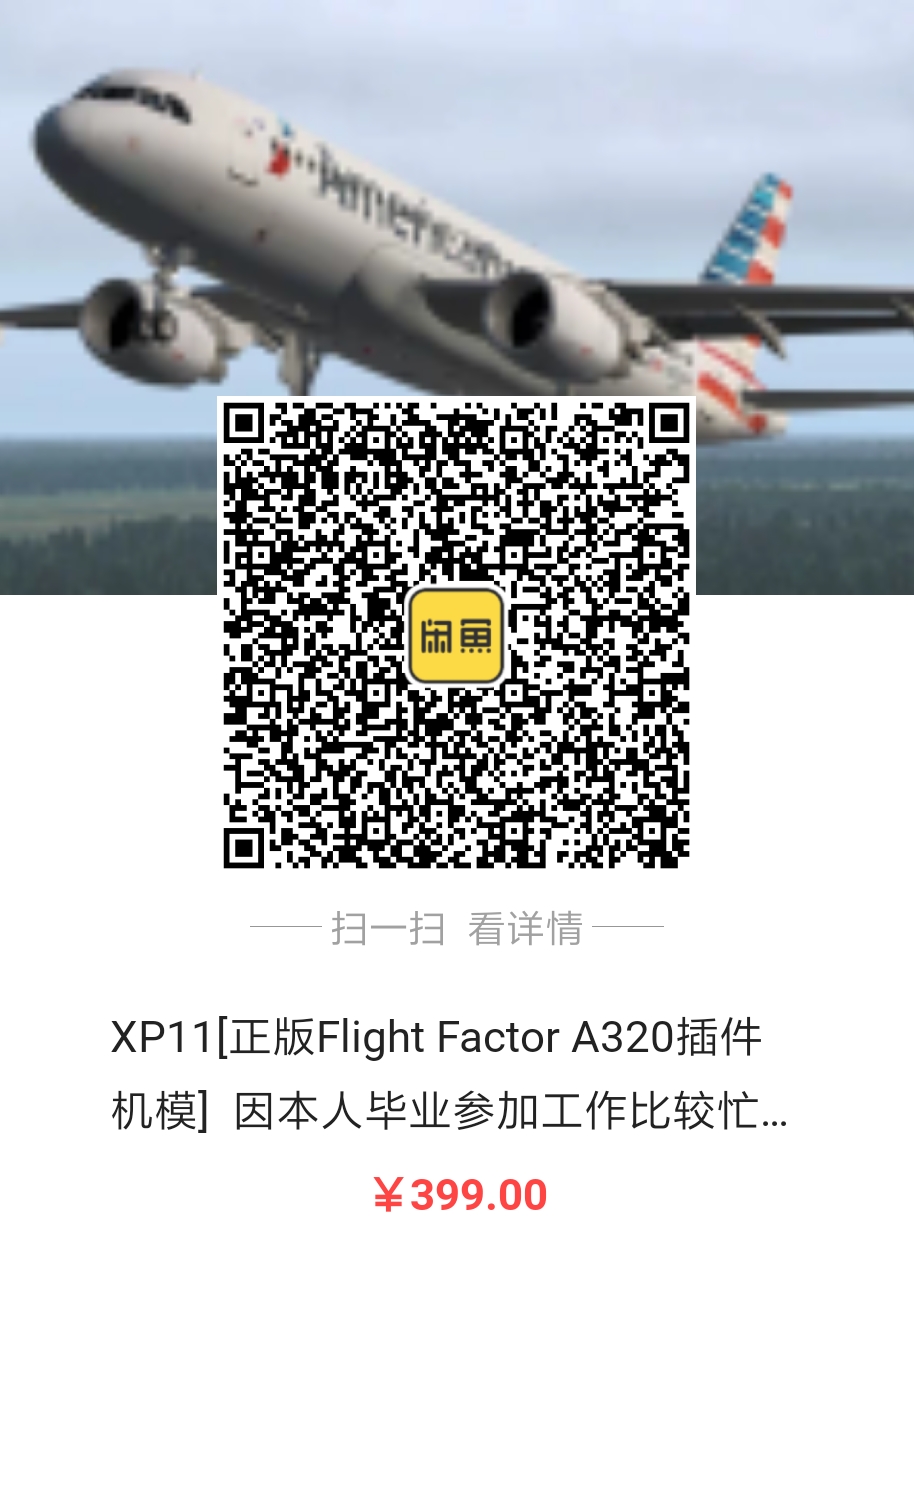 出售Flight Factor A320正版激活码，因毕业工作忙-719 